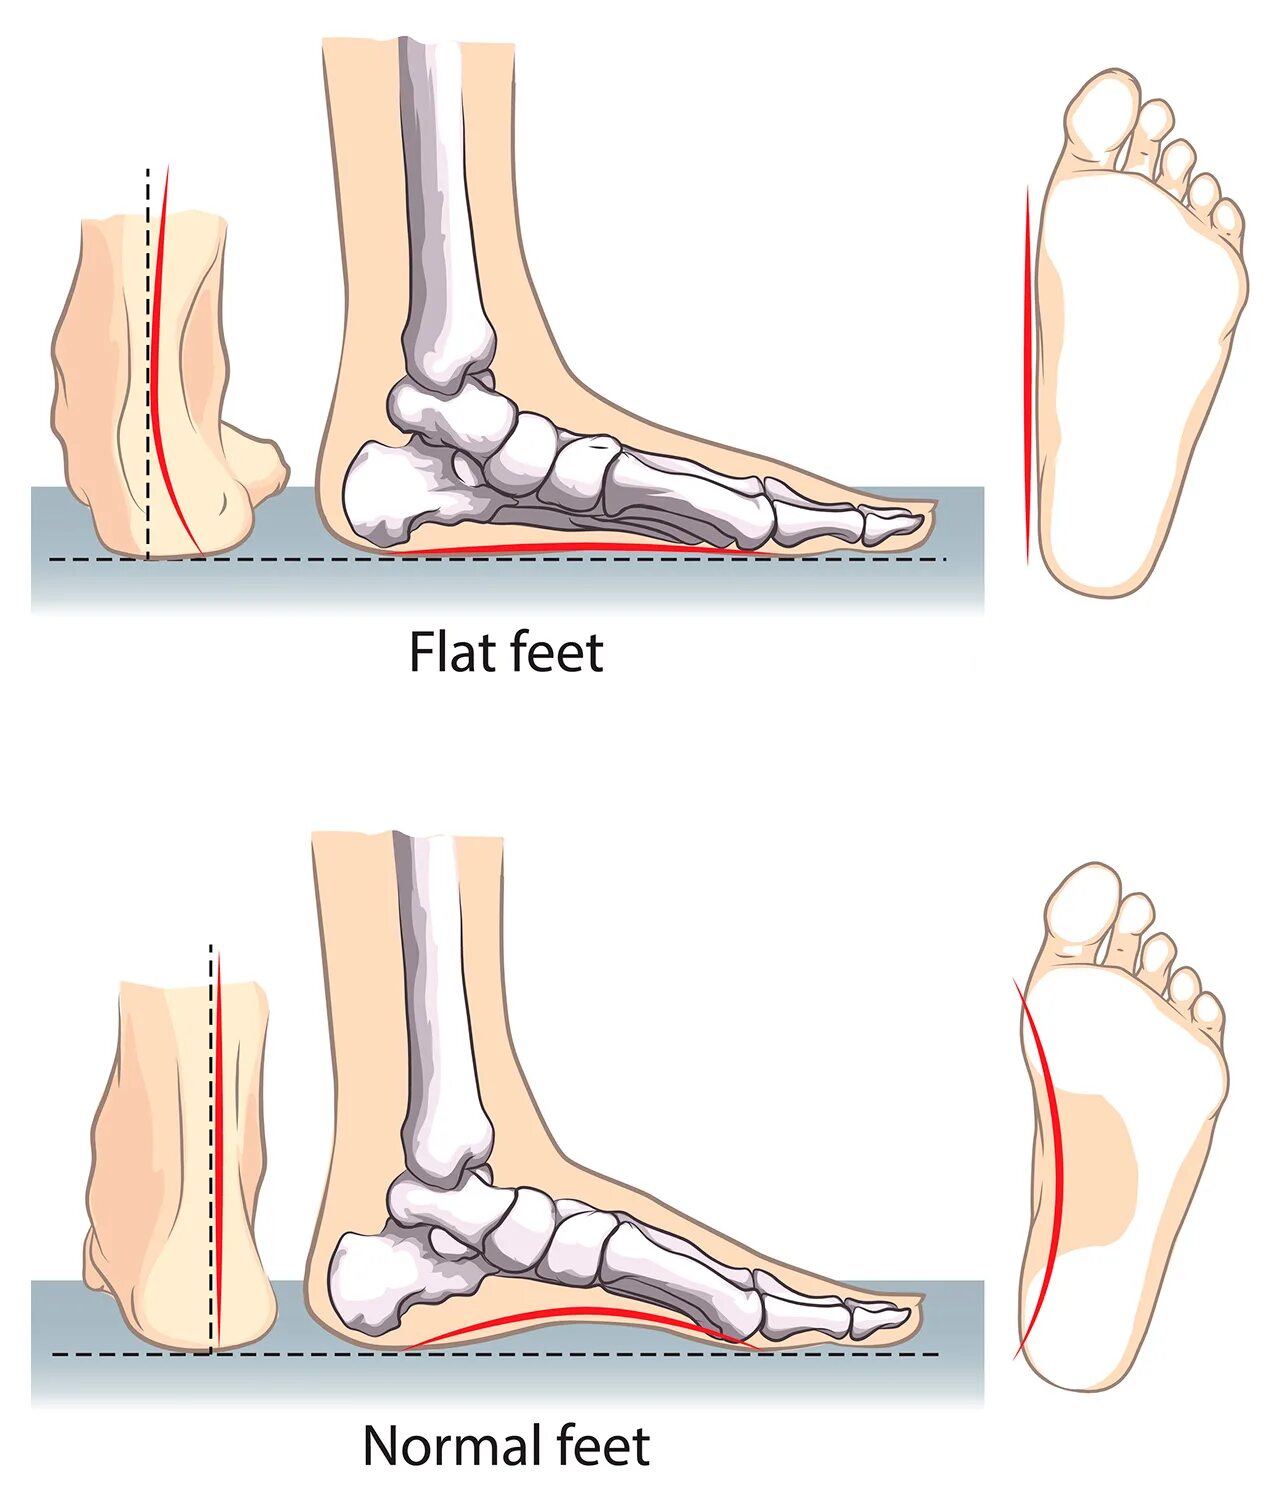 Плоскостопие на одной ноге берут ли. Нормальная стопа и плоскостопие. Как выглядит плоскостопие сбоку. Стопа анатомия плоскостопие. Степени плоскостопия вид сбоку.